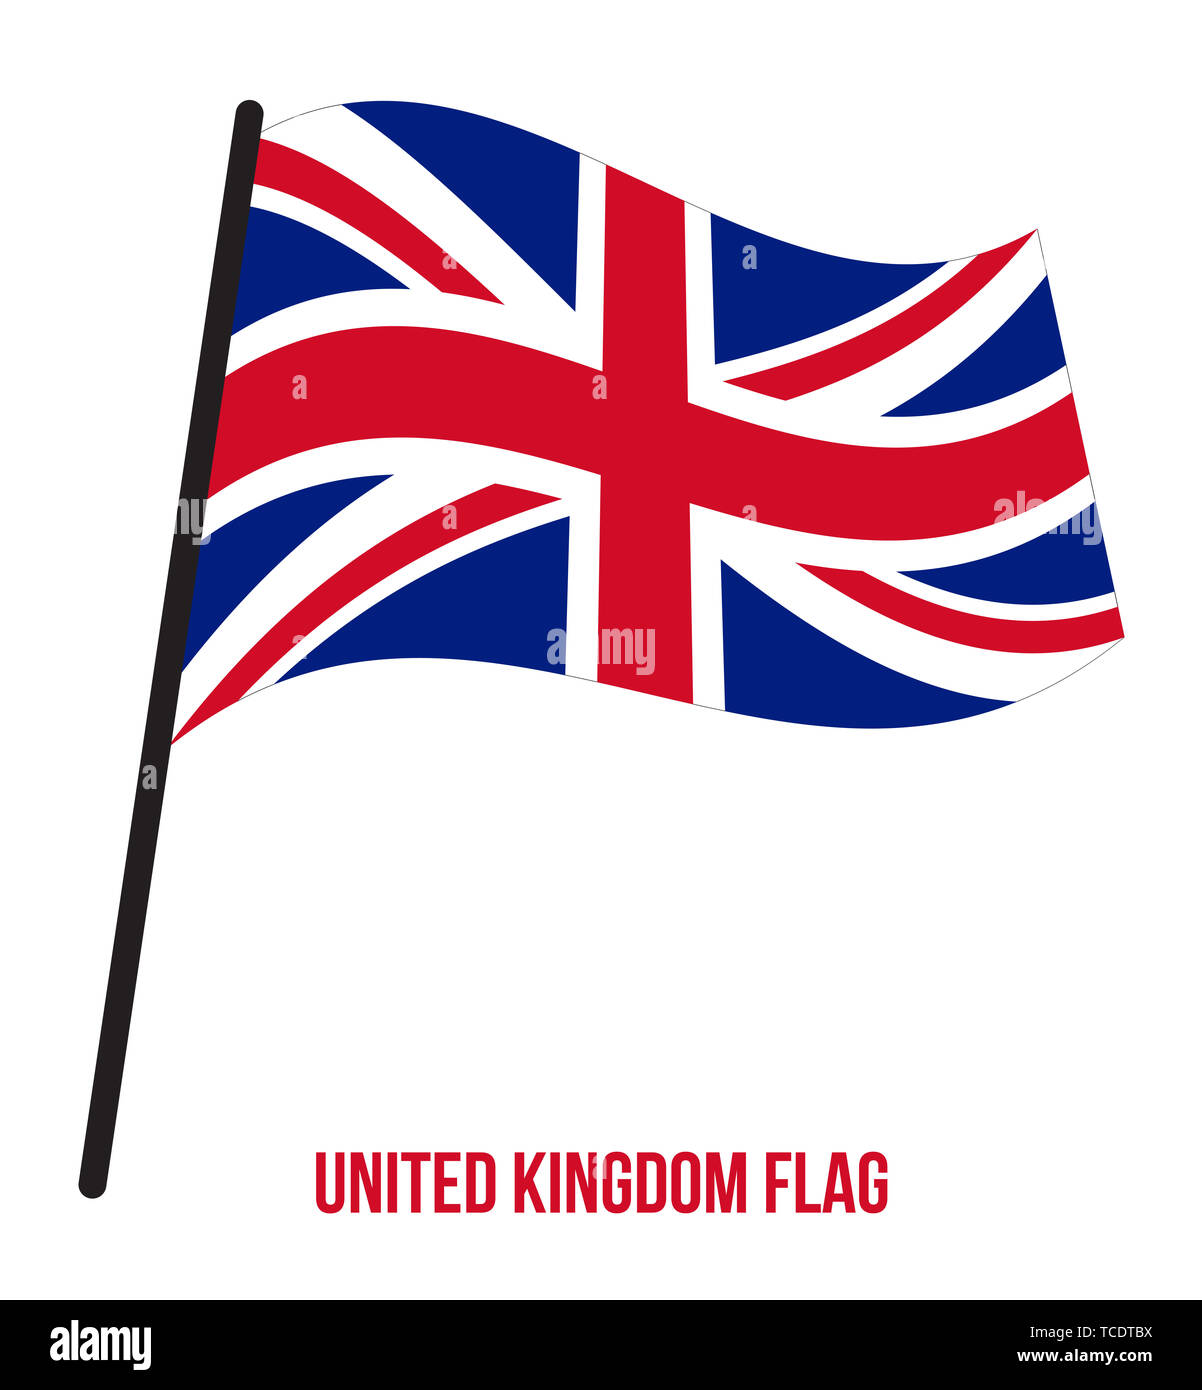 United Kingdom Flag Waving Vector Illustration on White Background. United Kingdom National Flag. Stock Photo